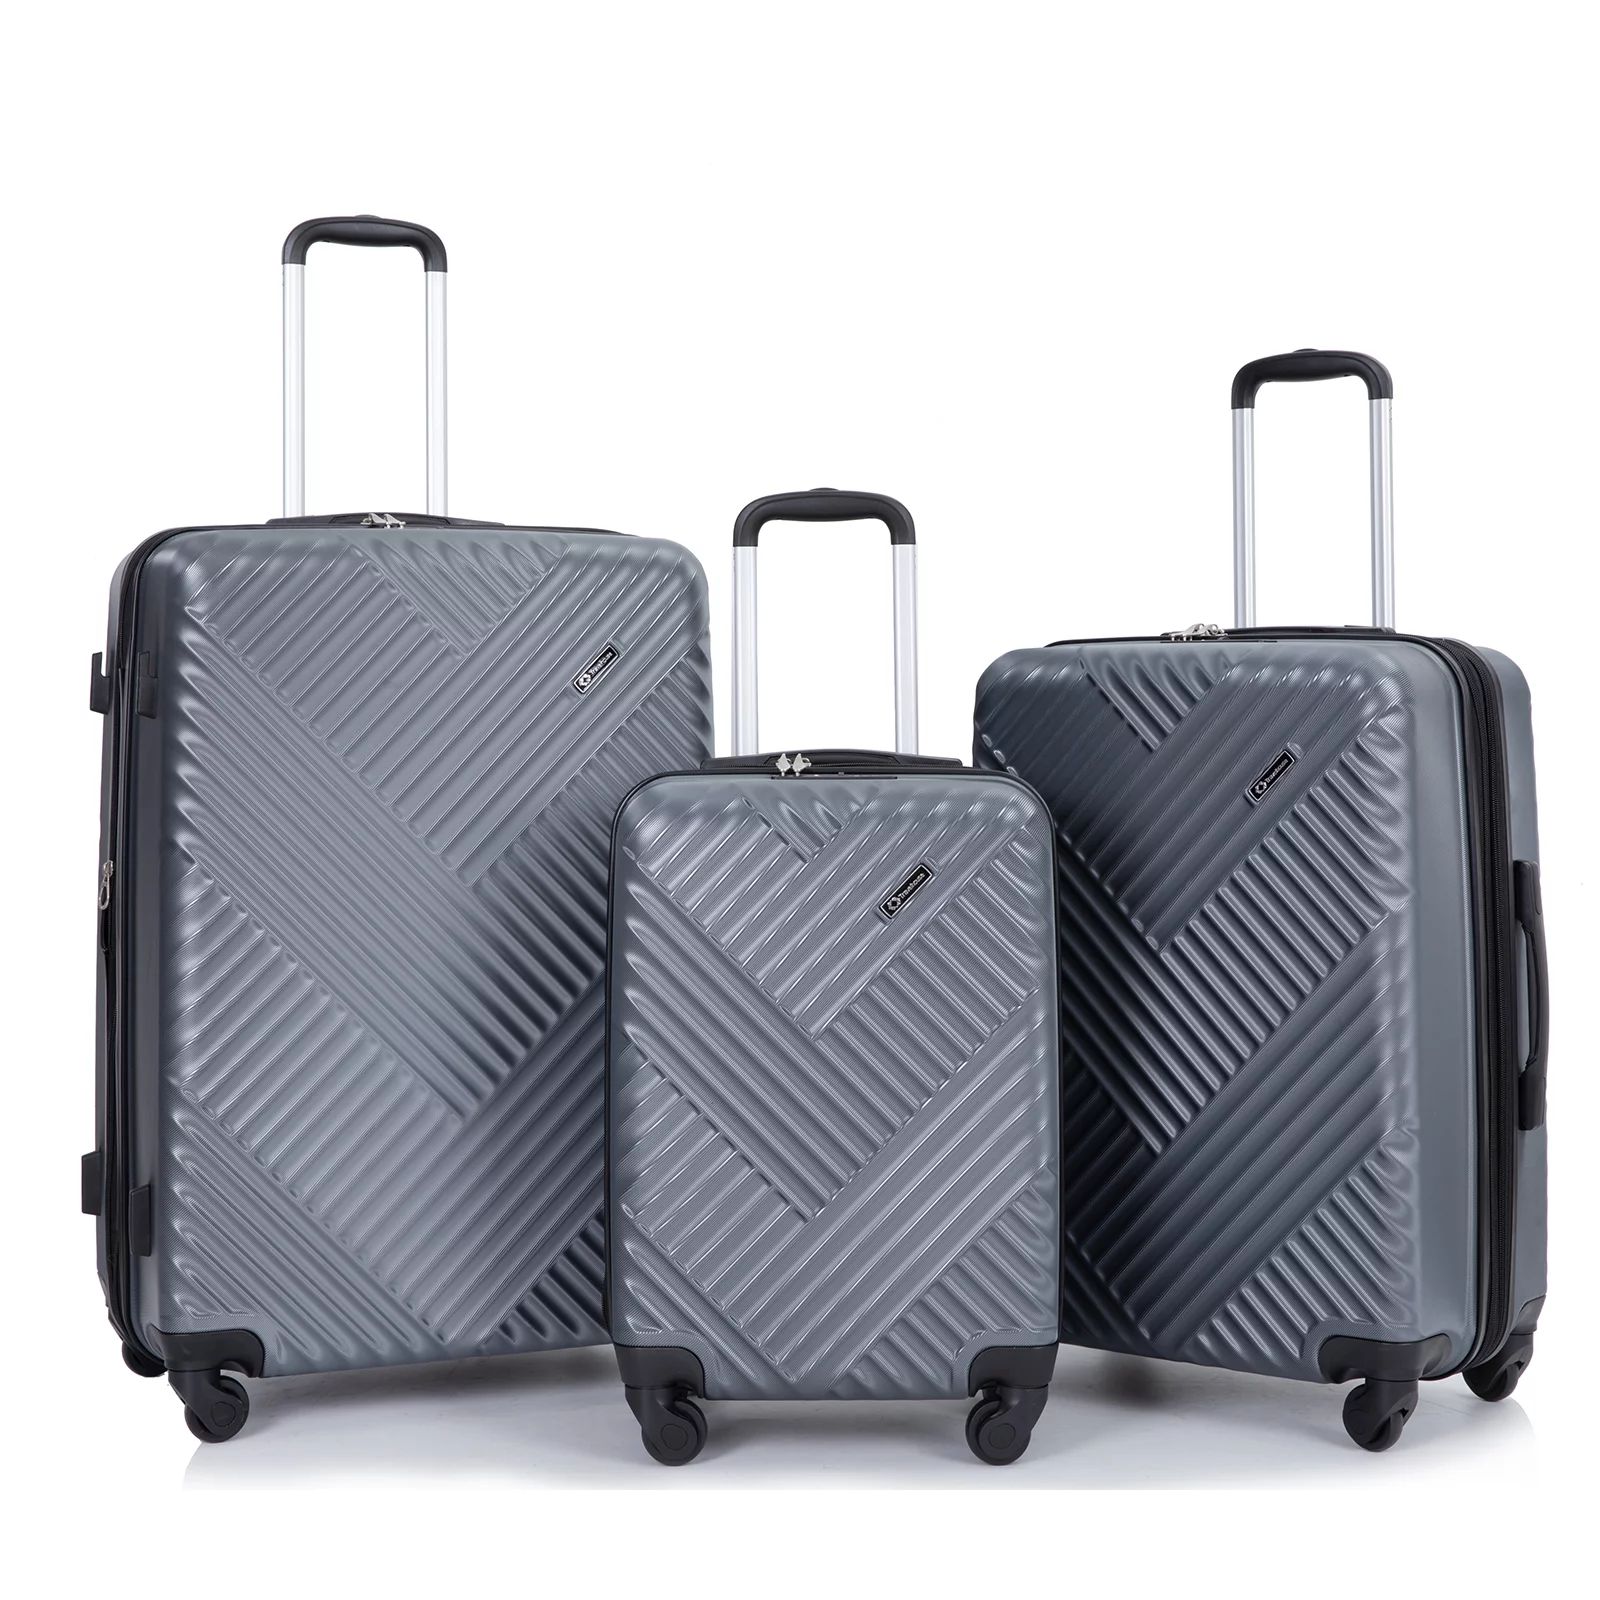 Travelhouse 3 Piece Luggage Set Hardshell Expandable Lightweight Suitcase with TSA Lock Spinner W... | Walmart (US)